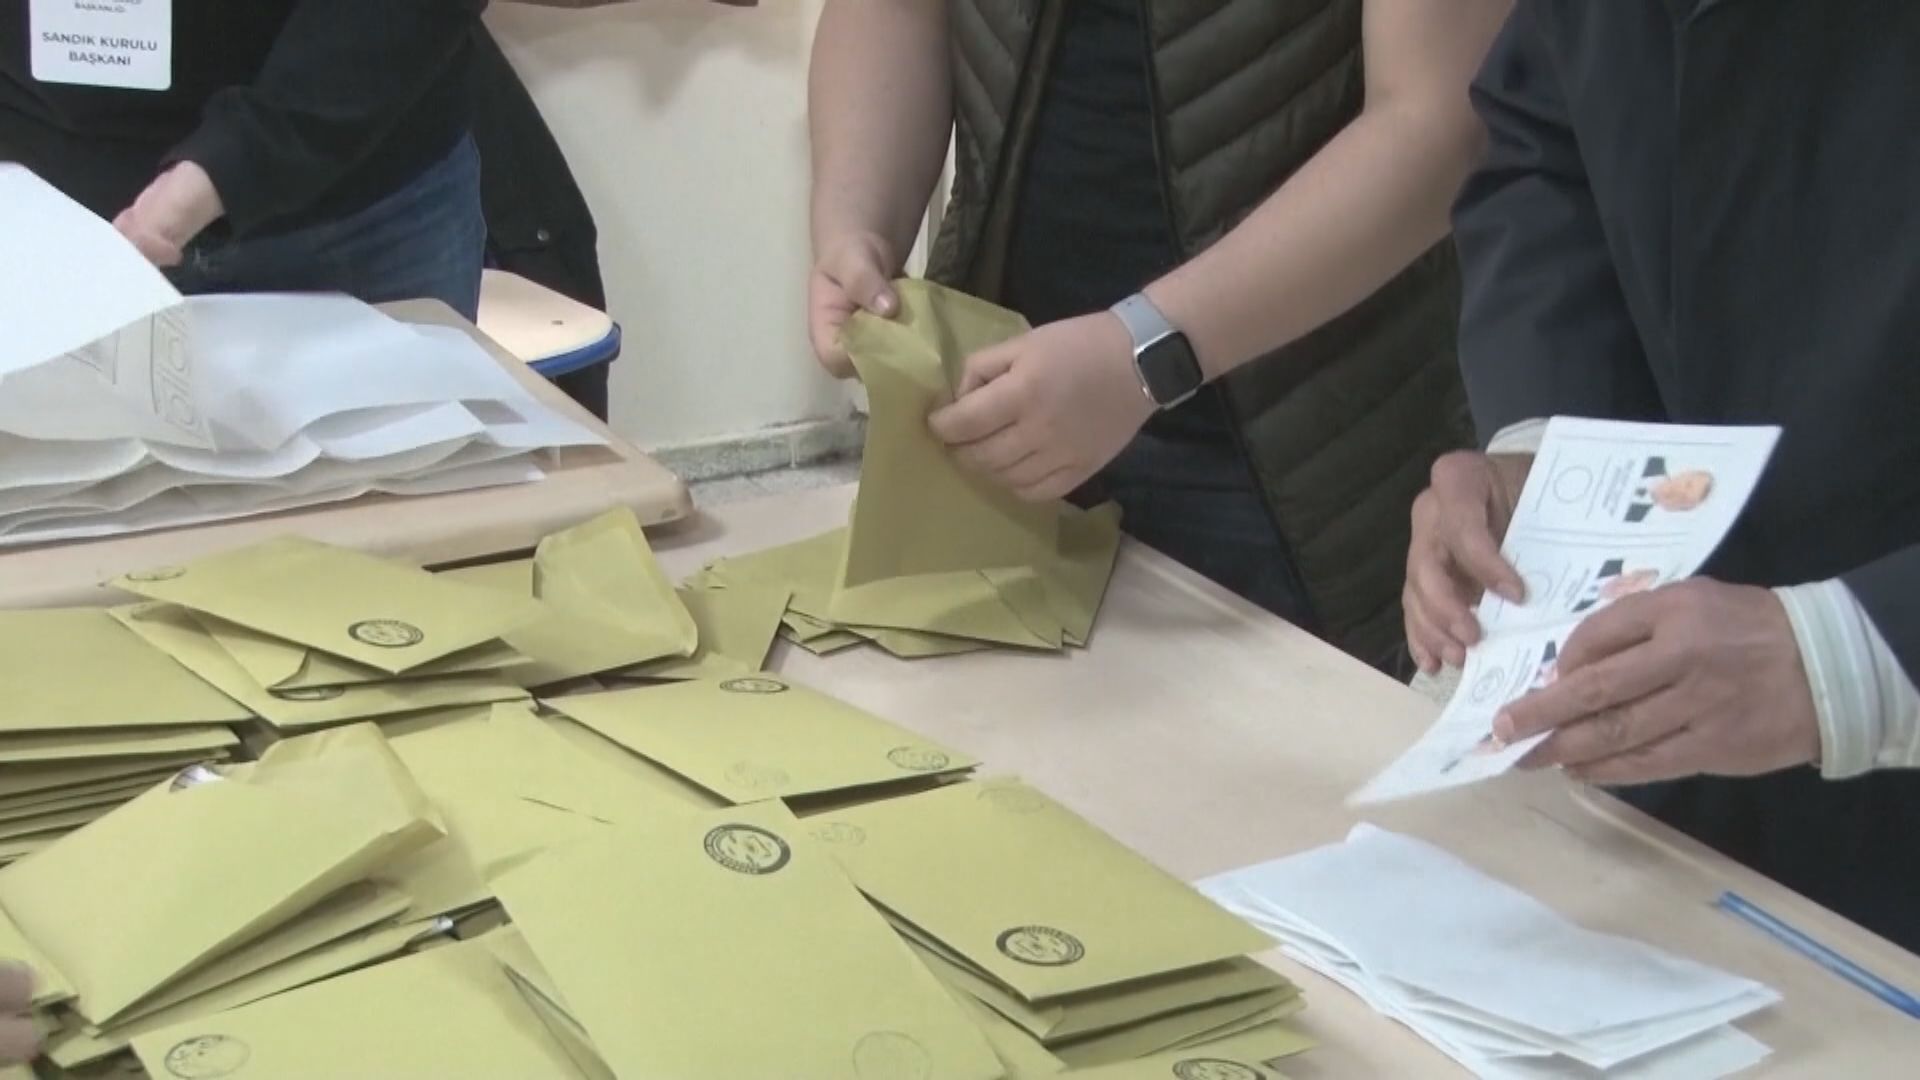 土耳其大選已點算逾九成選票 初步結果無人得票過半需舉行次輪投票